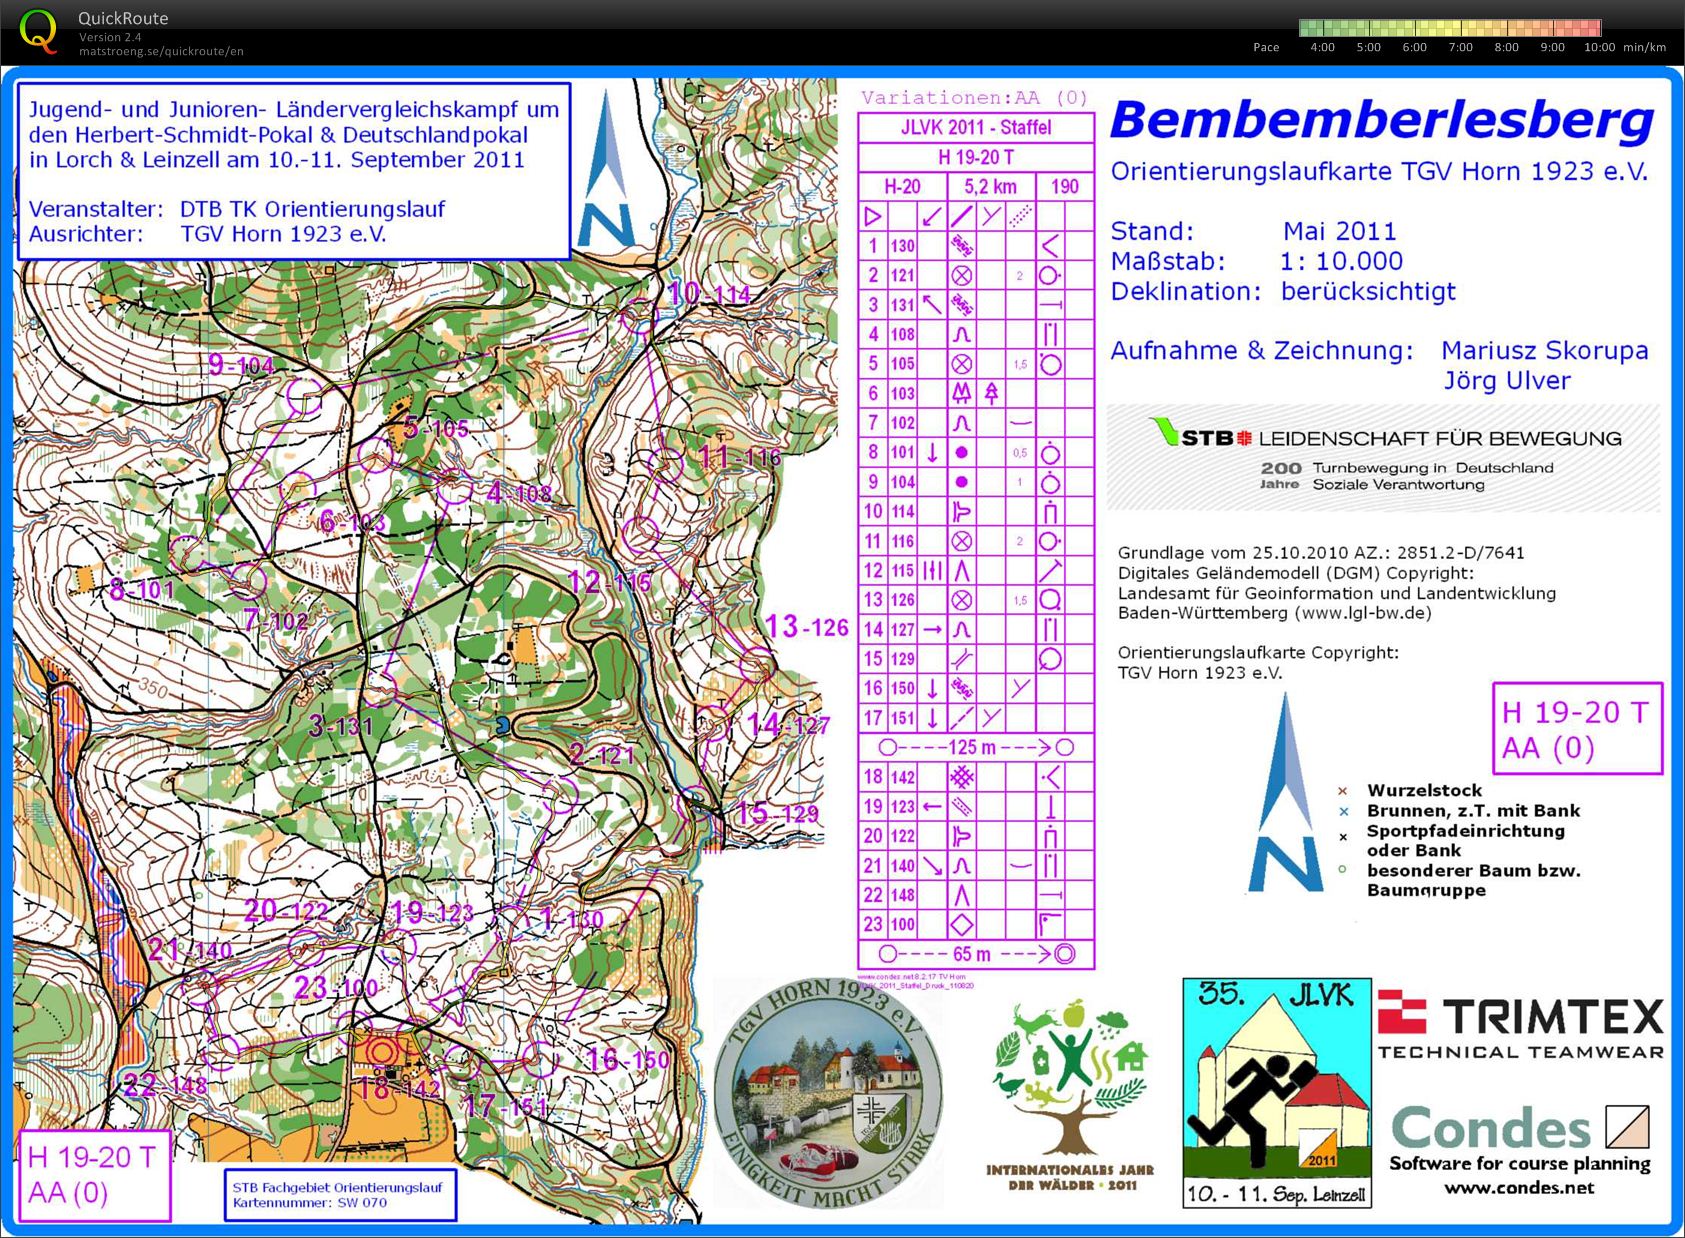 Training Bemberlesberg (01-04-2012)